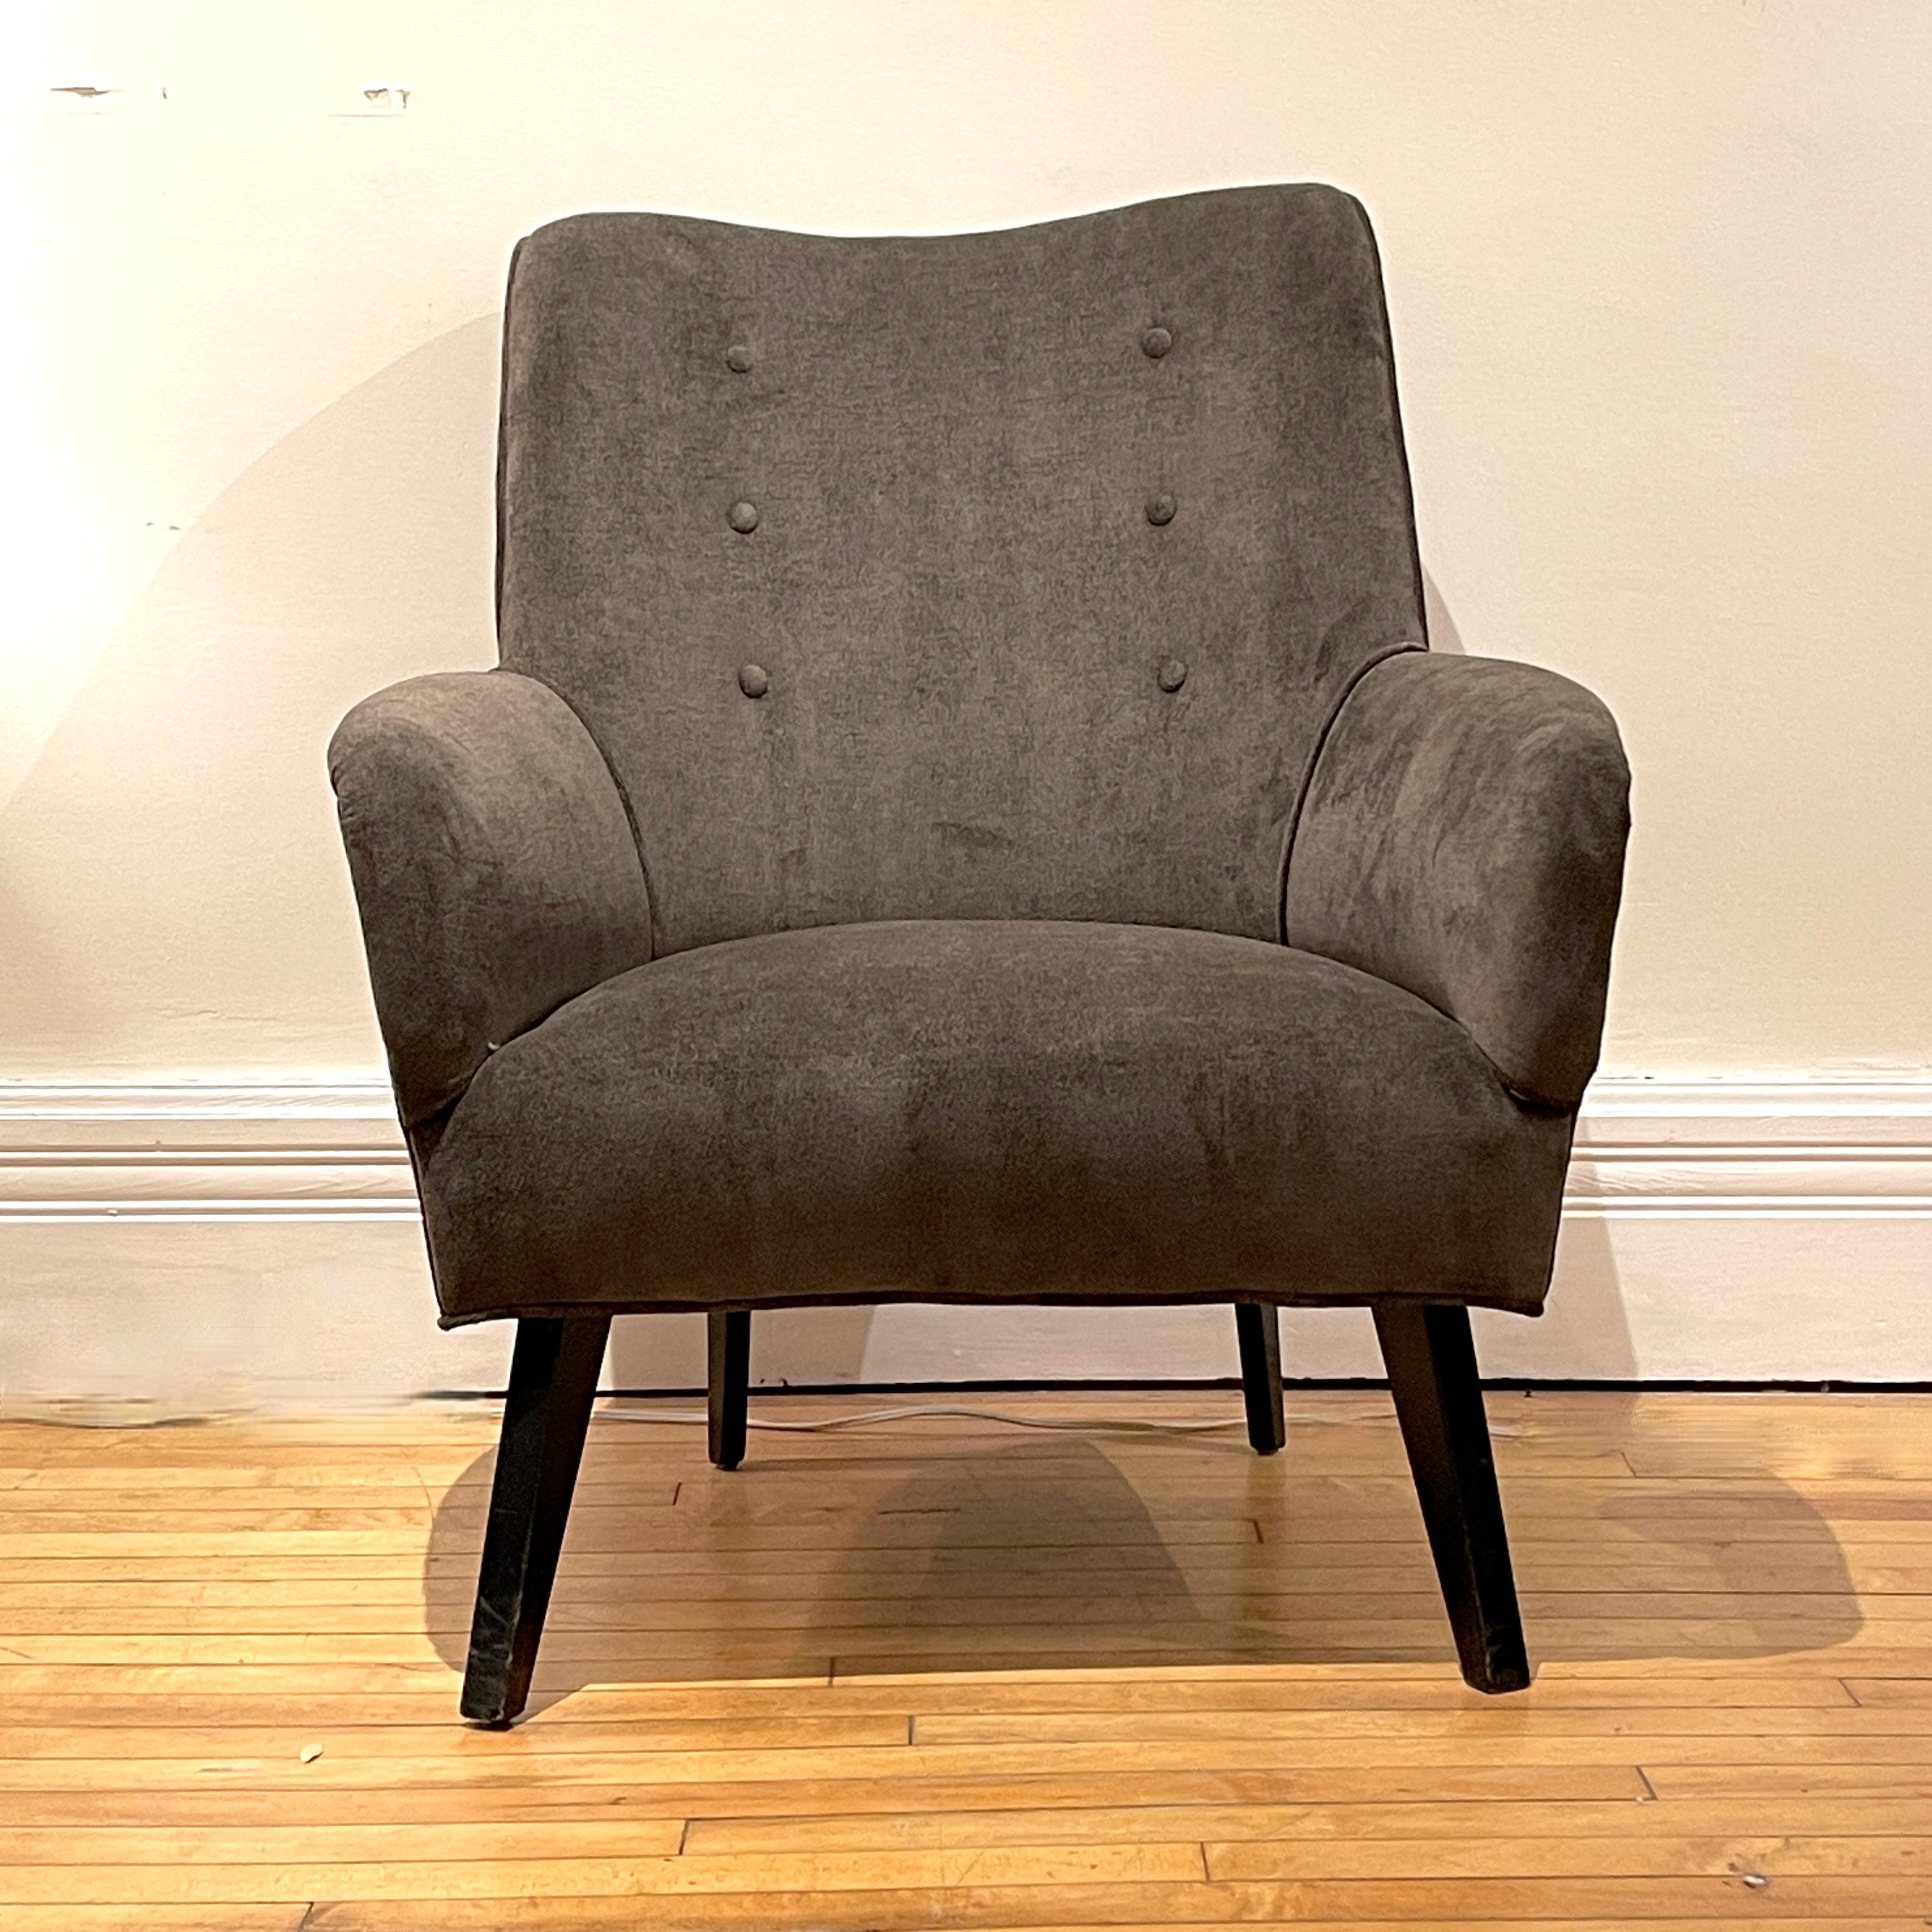 Pair of Sleek Italian Sculptural Midcentury Modern Chairs, New Velvet Upholstery 4